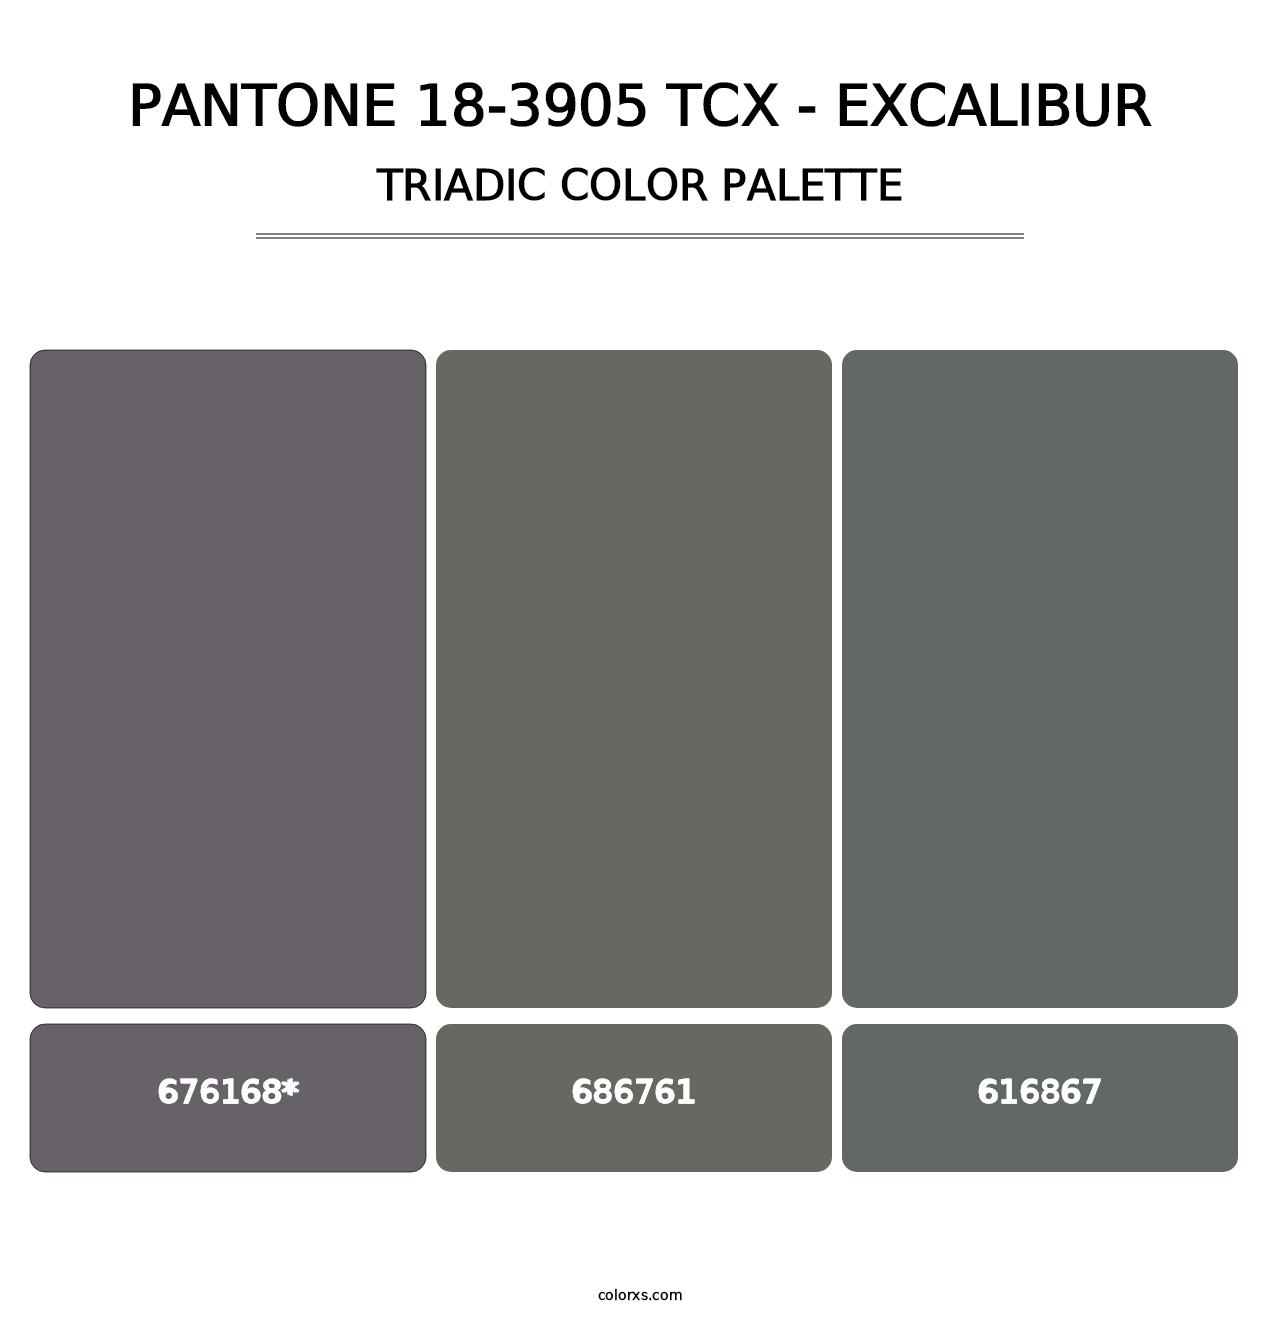 PANTONE 18-3905 TCX - Excalibur - Triadic Color Palette